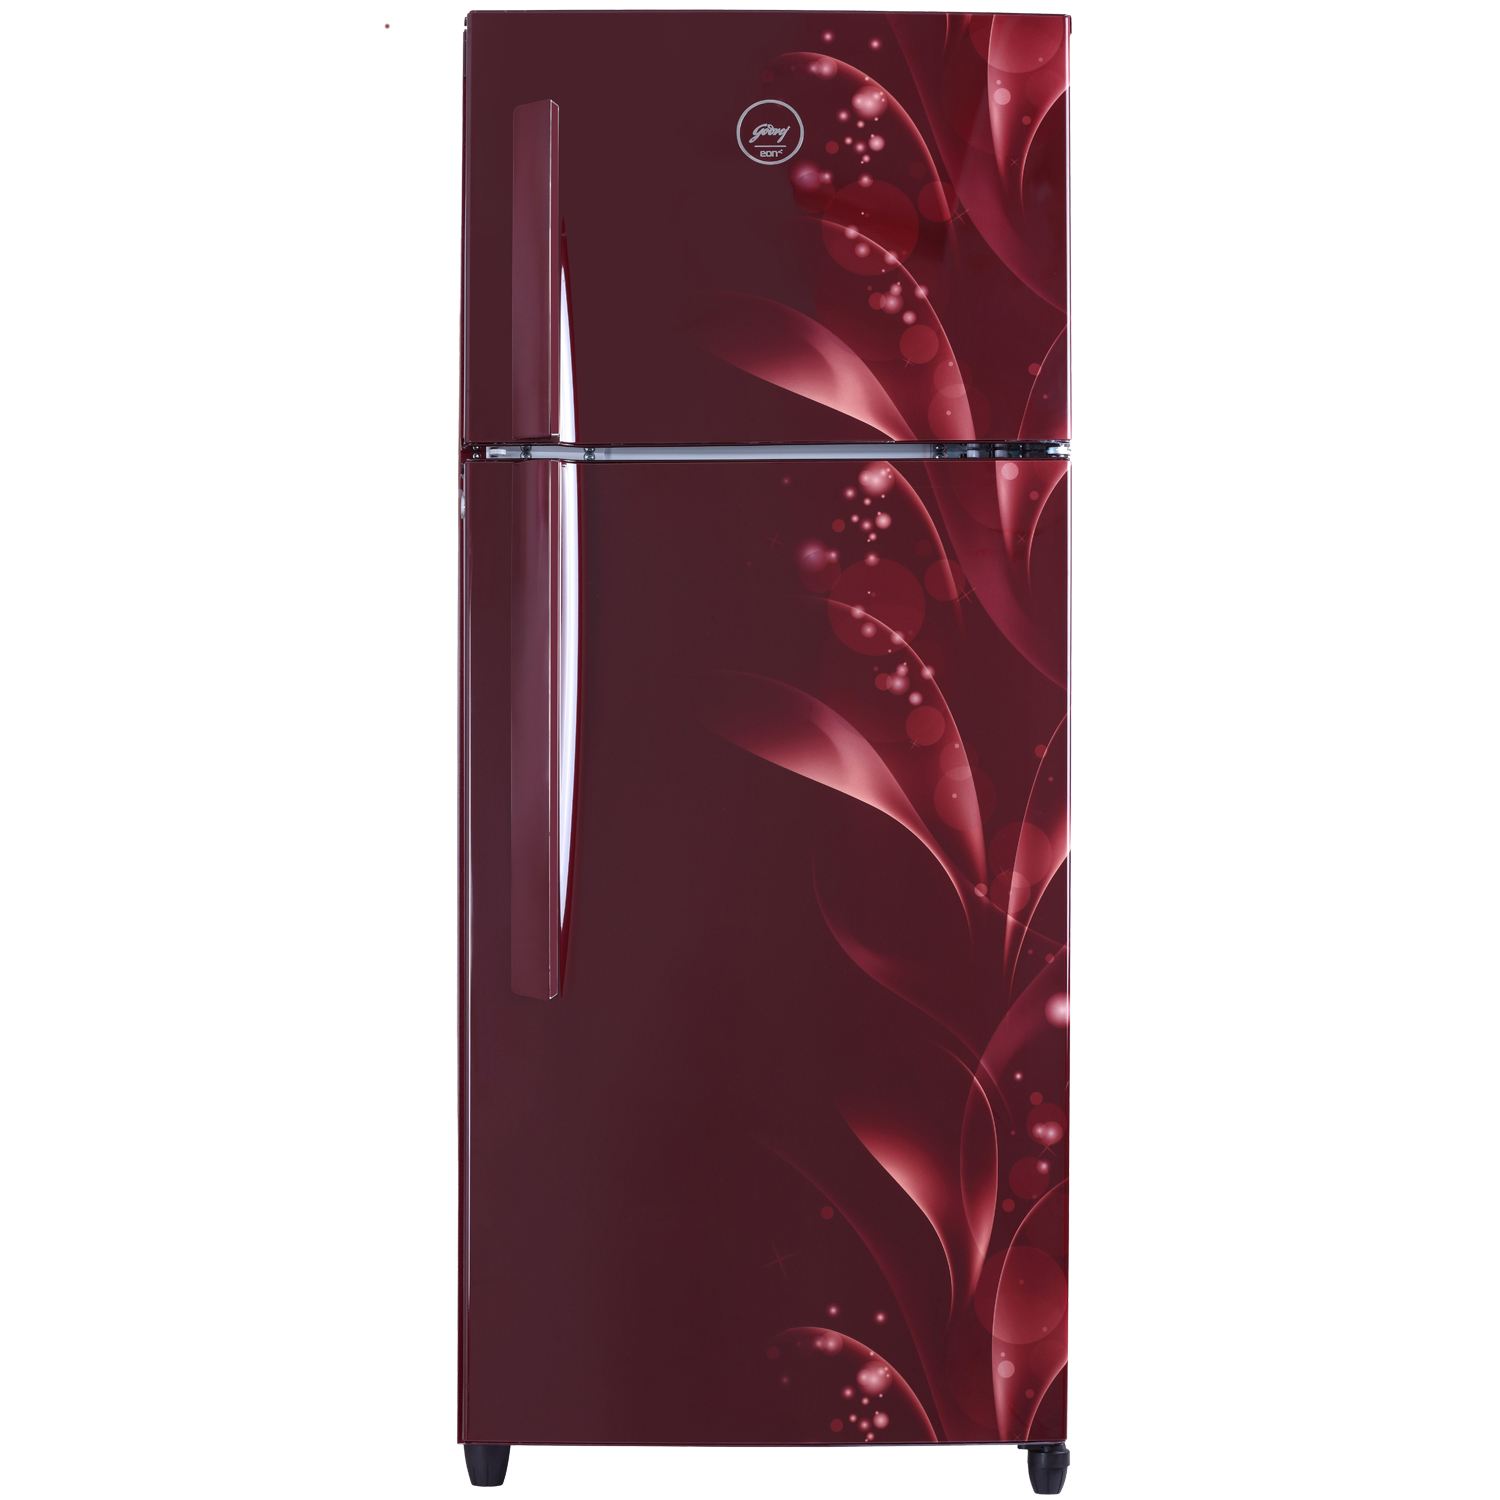 Image result for Godrej Refrigerator hd images